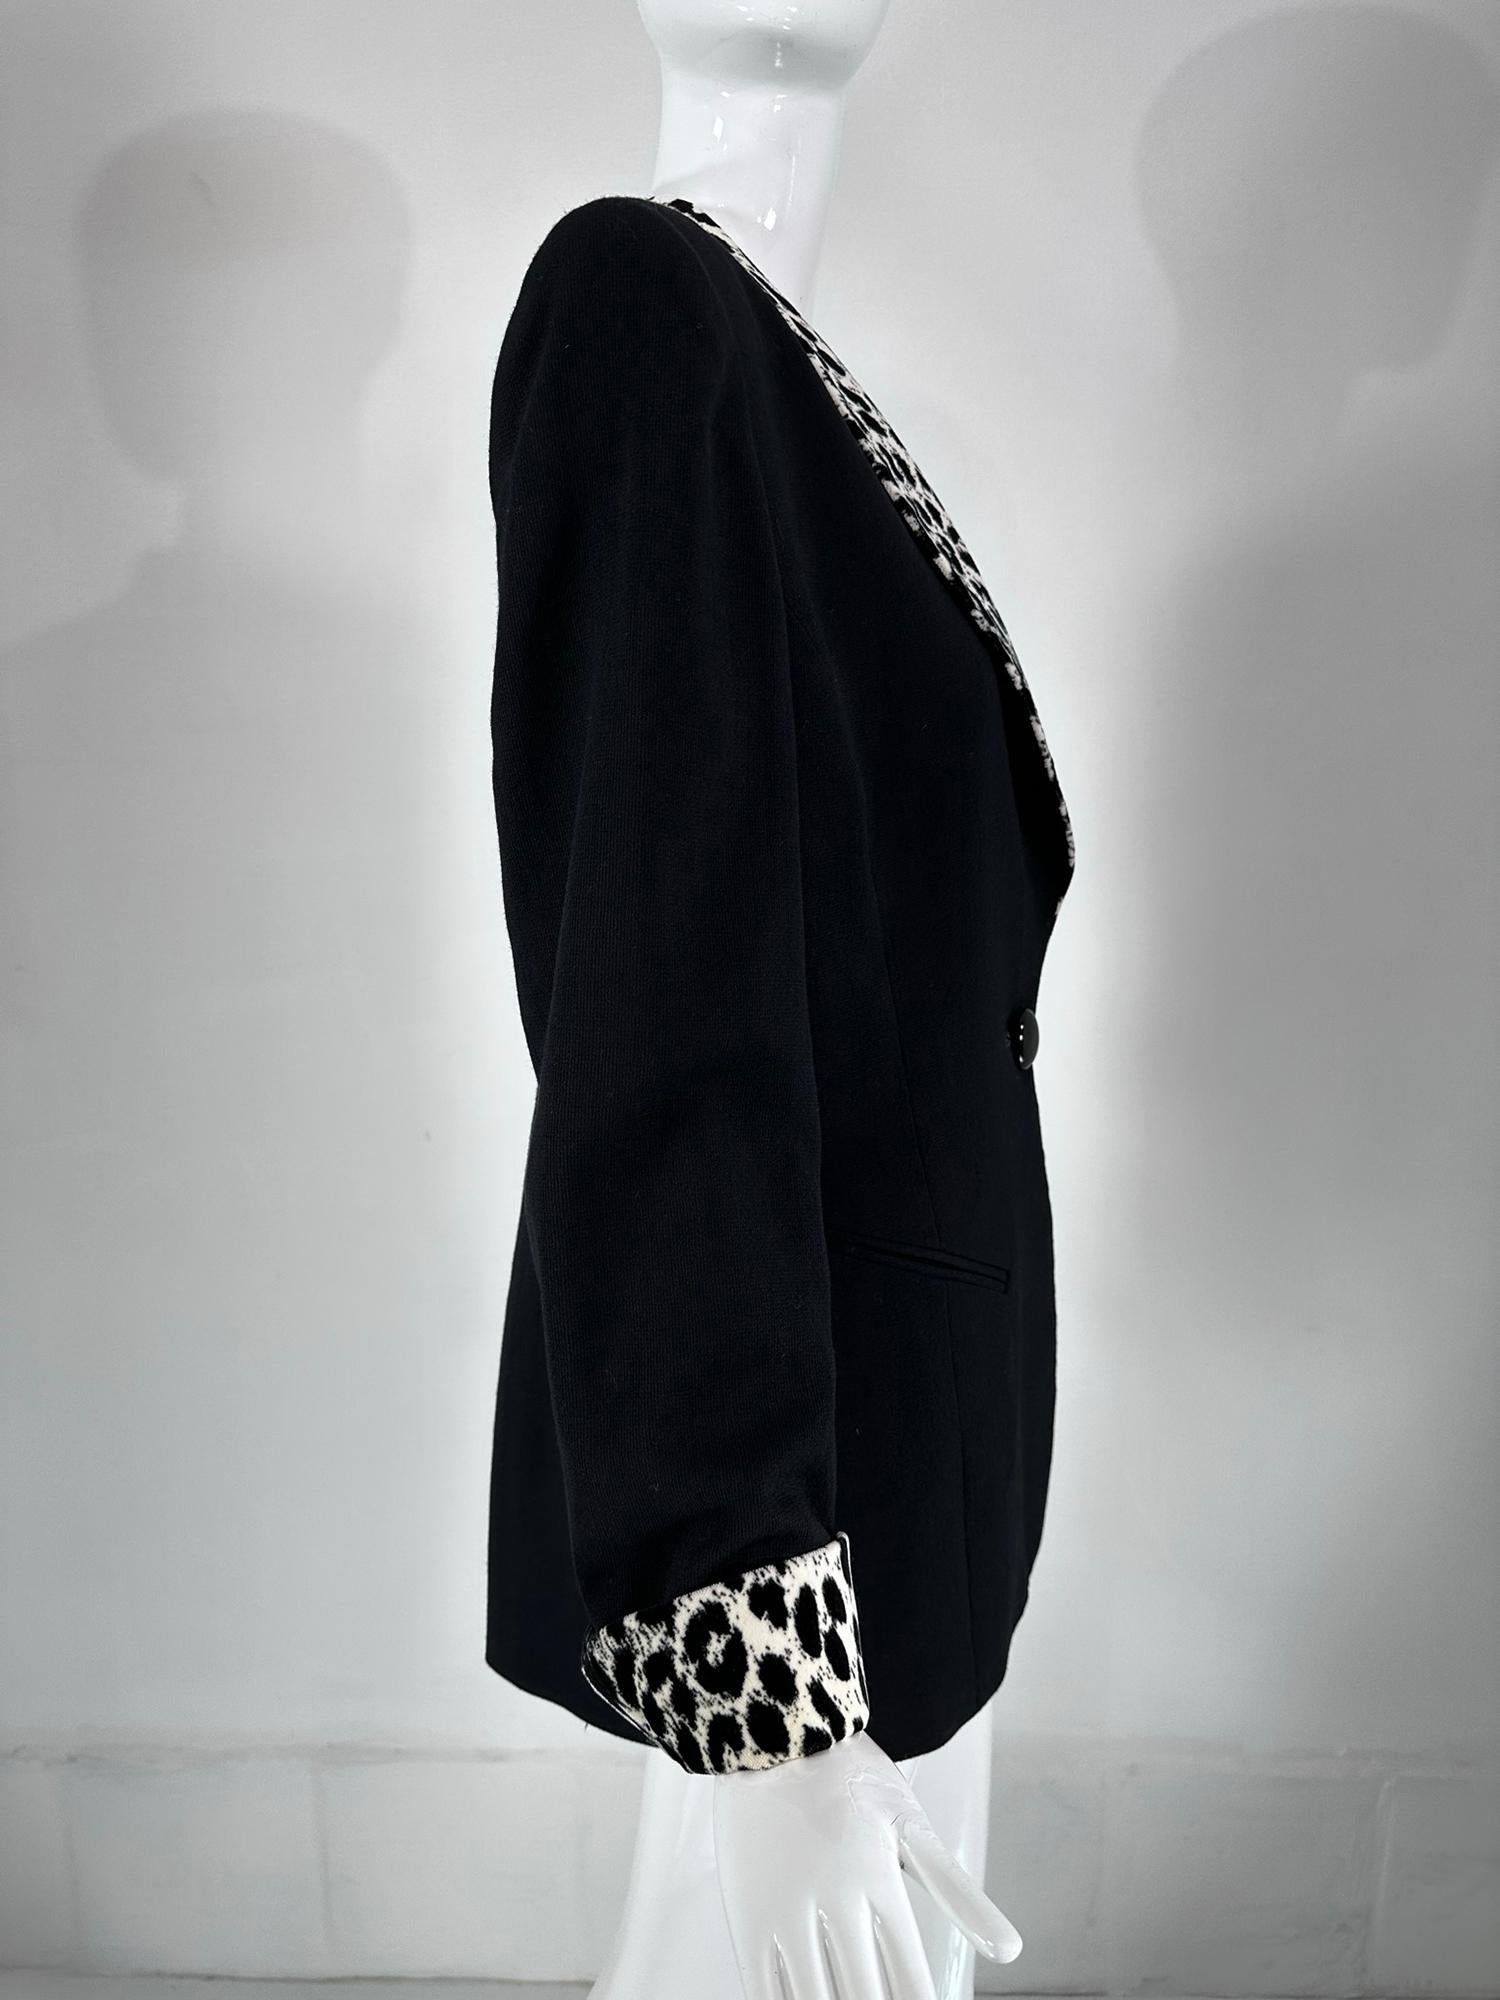 Women's Christian Dior Black Princess Seam Tuxedo Jacket Black White Velvet Lapels 1990s For Sale